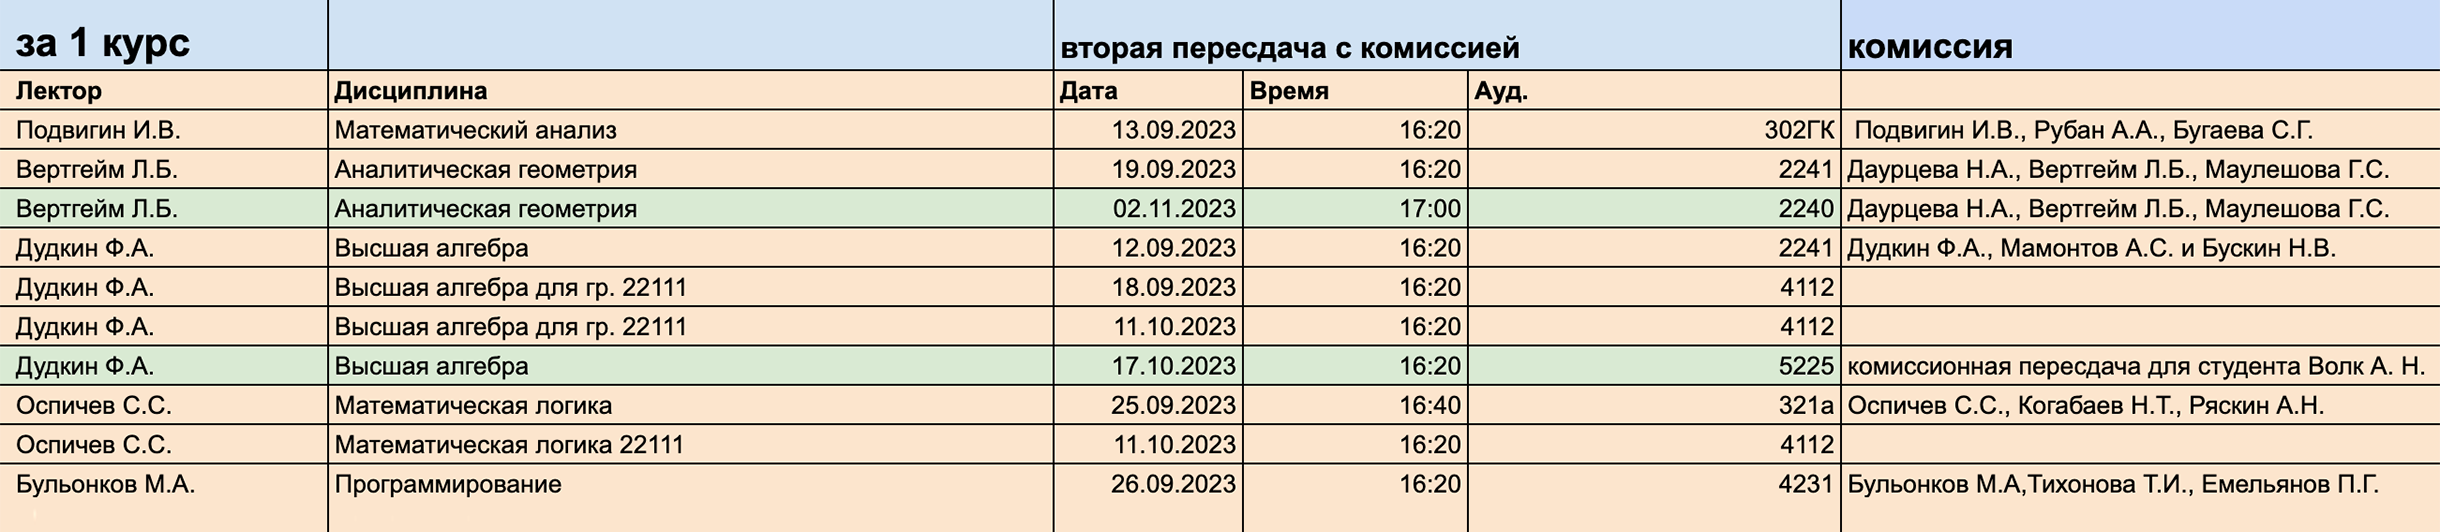 Расписание комиссионных пересдач на Механико-математическом факультете Новосибирского государственного университета